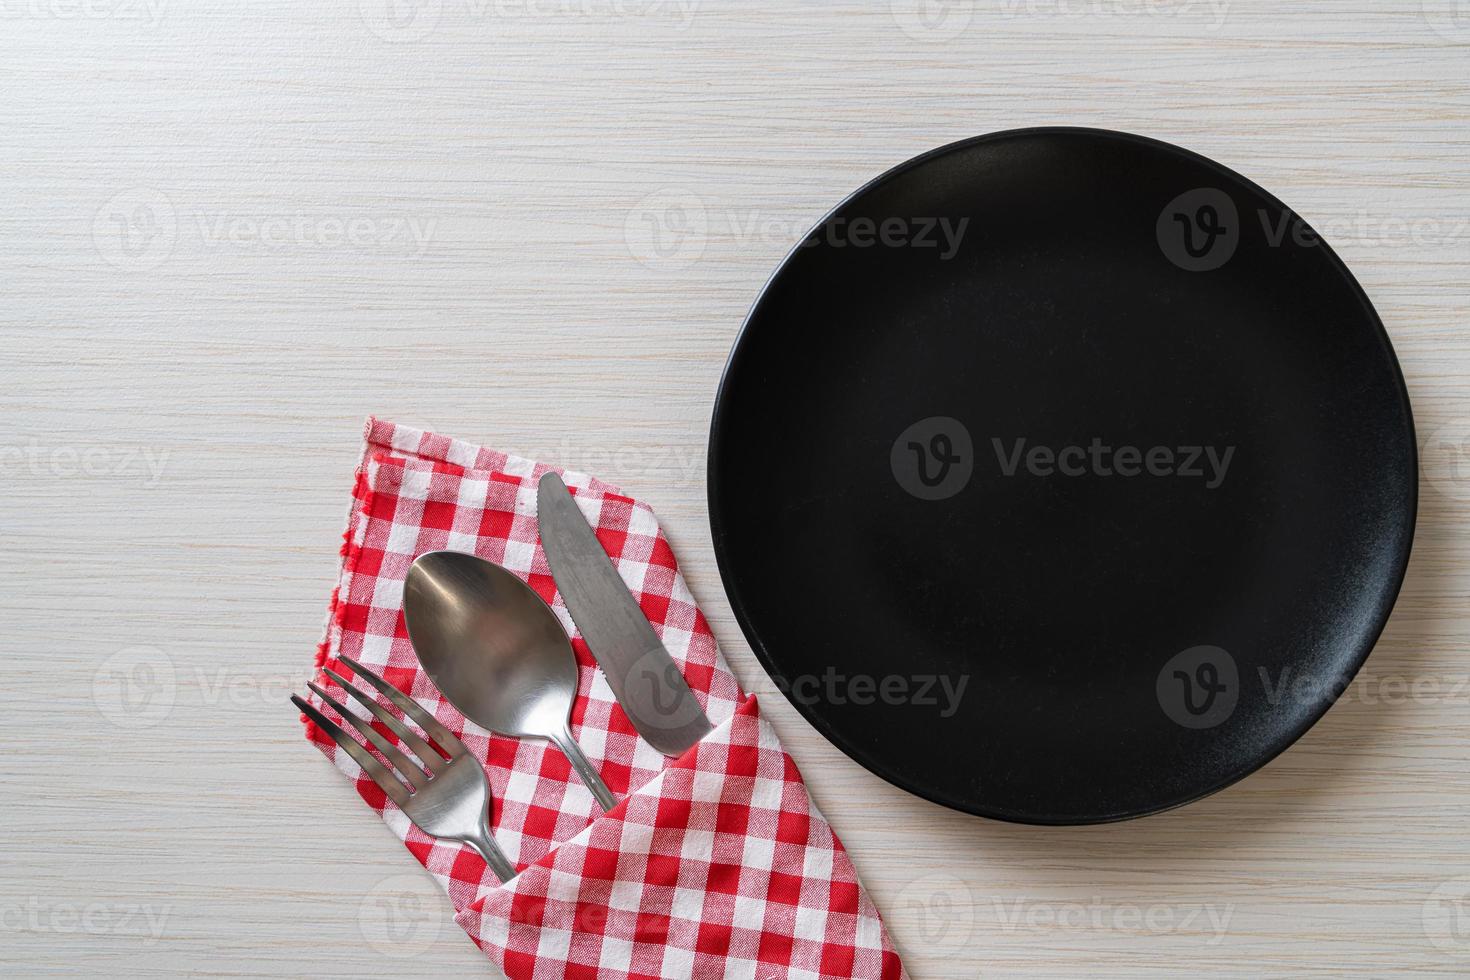 leerer Teller oder Teller mit Messer, Gabel und Löffel auf Holzfliesenhintergrund foto